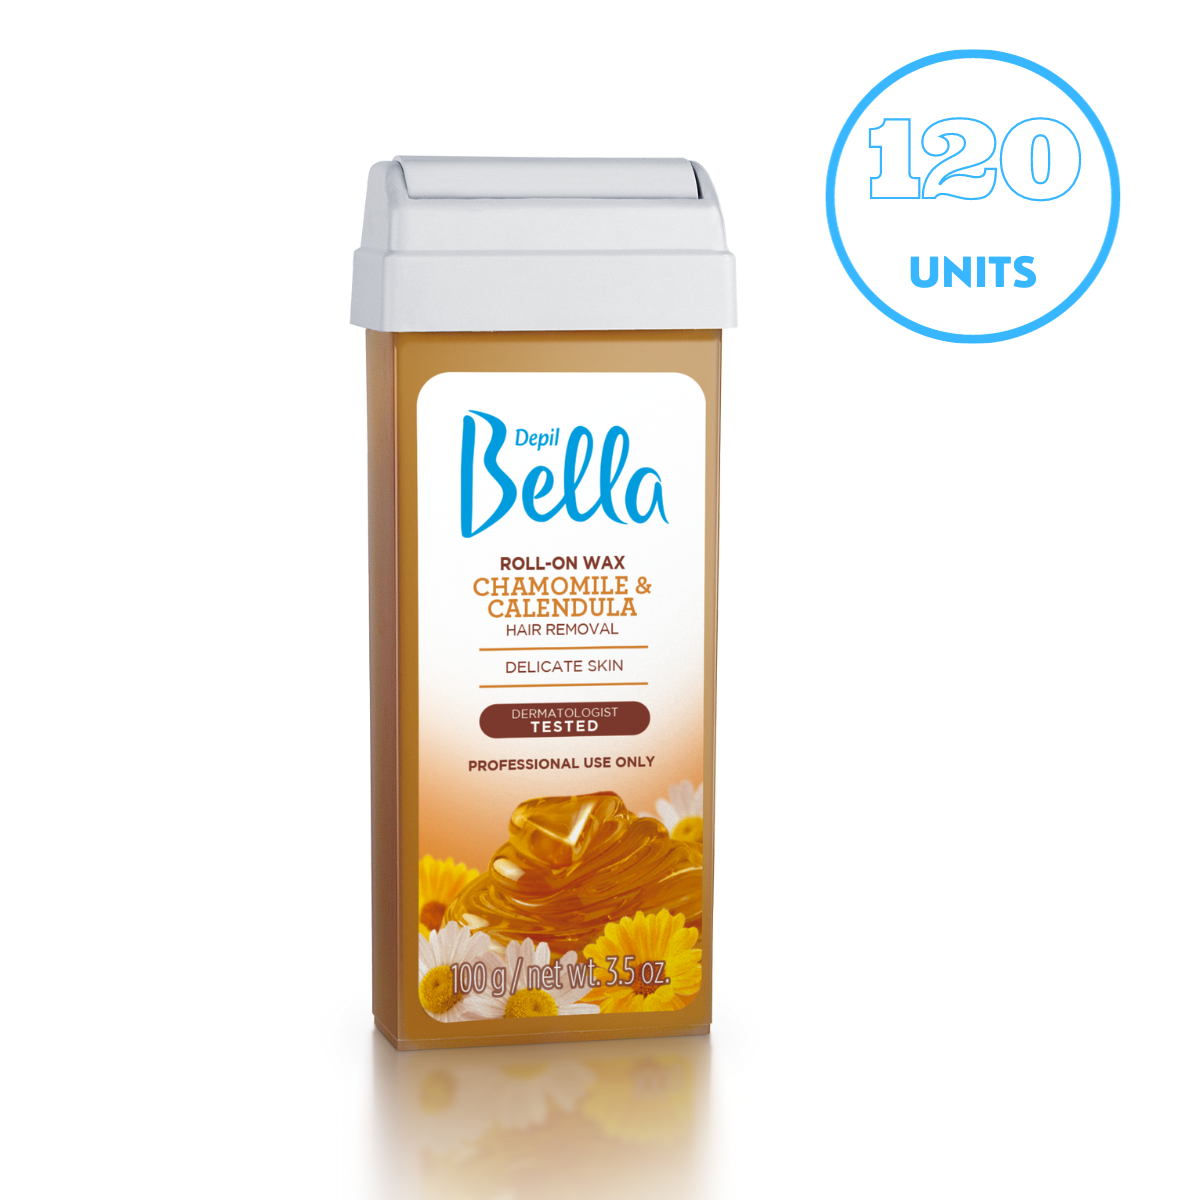 Depil Bella Chamomile and Calendula Roll-On Depilatory Wax, 3.52oz, (120 Units offer)